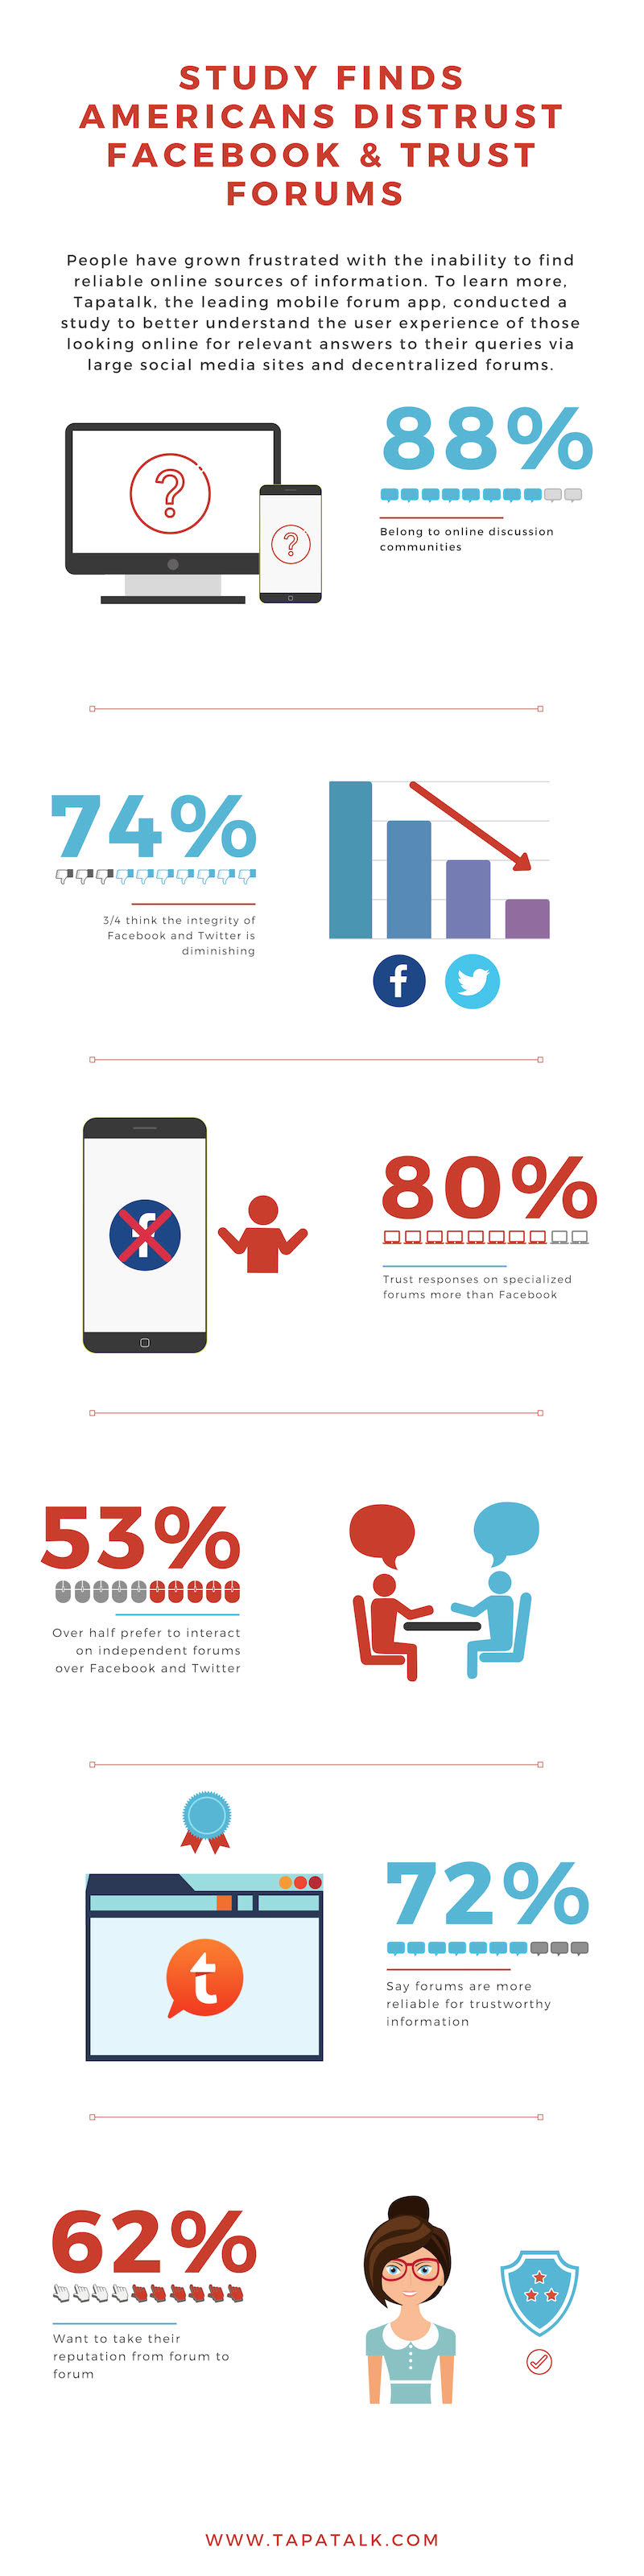 Study Shows Americans Prefer Online Forums Over Mainstream Social Media | DeviceDaily.com